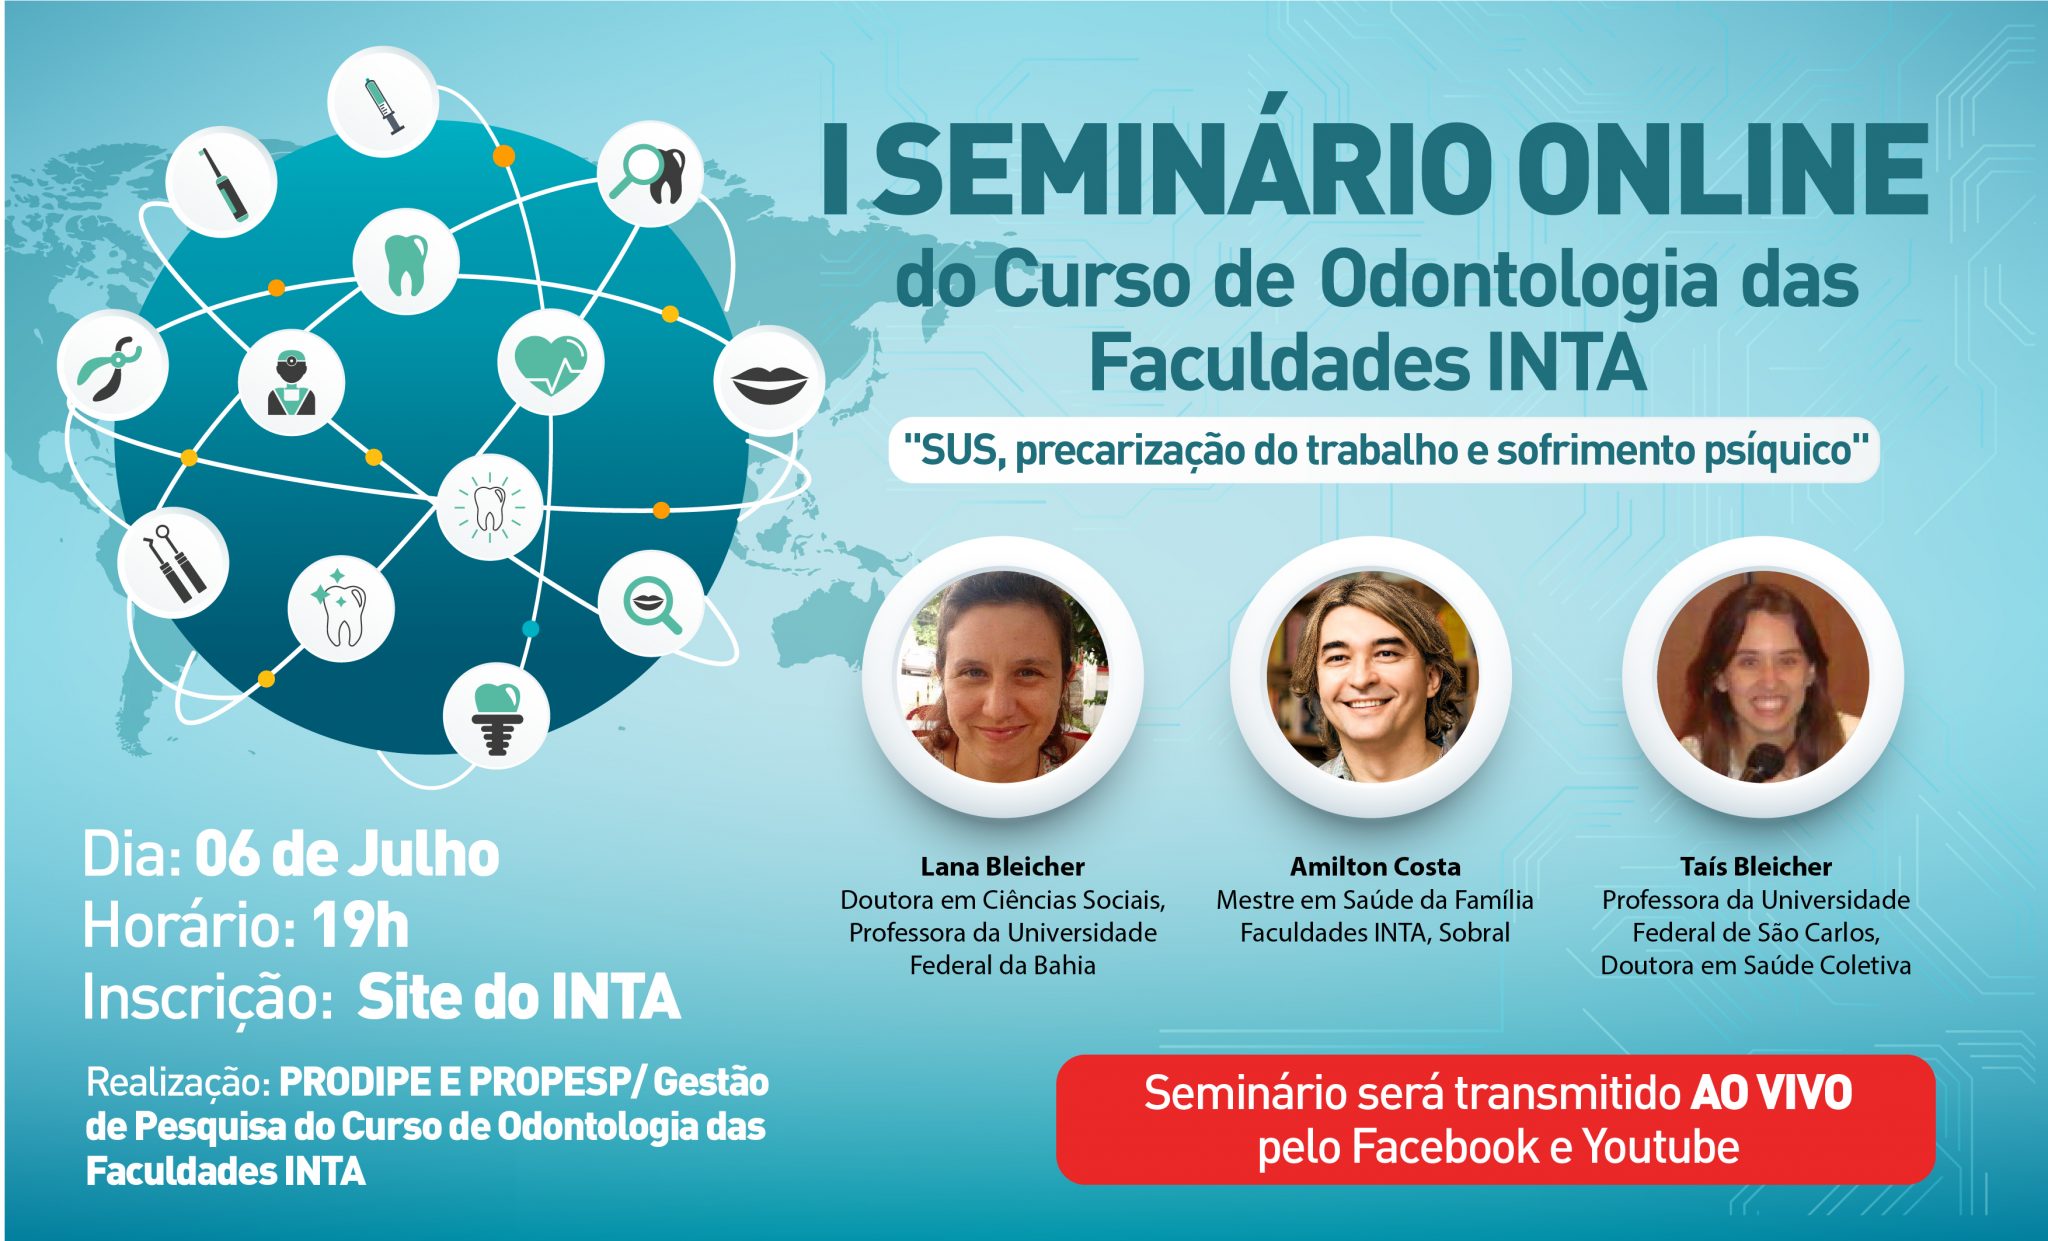 I Seminário Online do Curso de Odontologia das Faculdades INTA